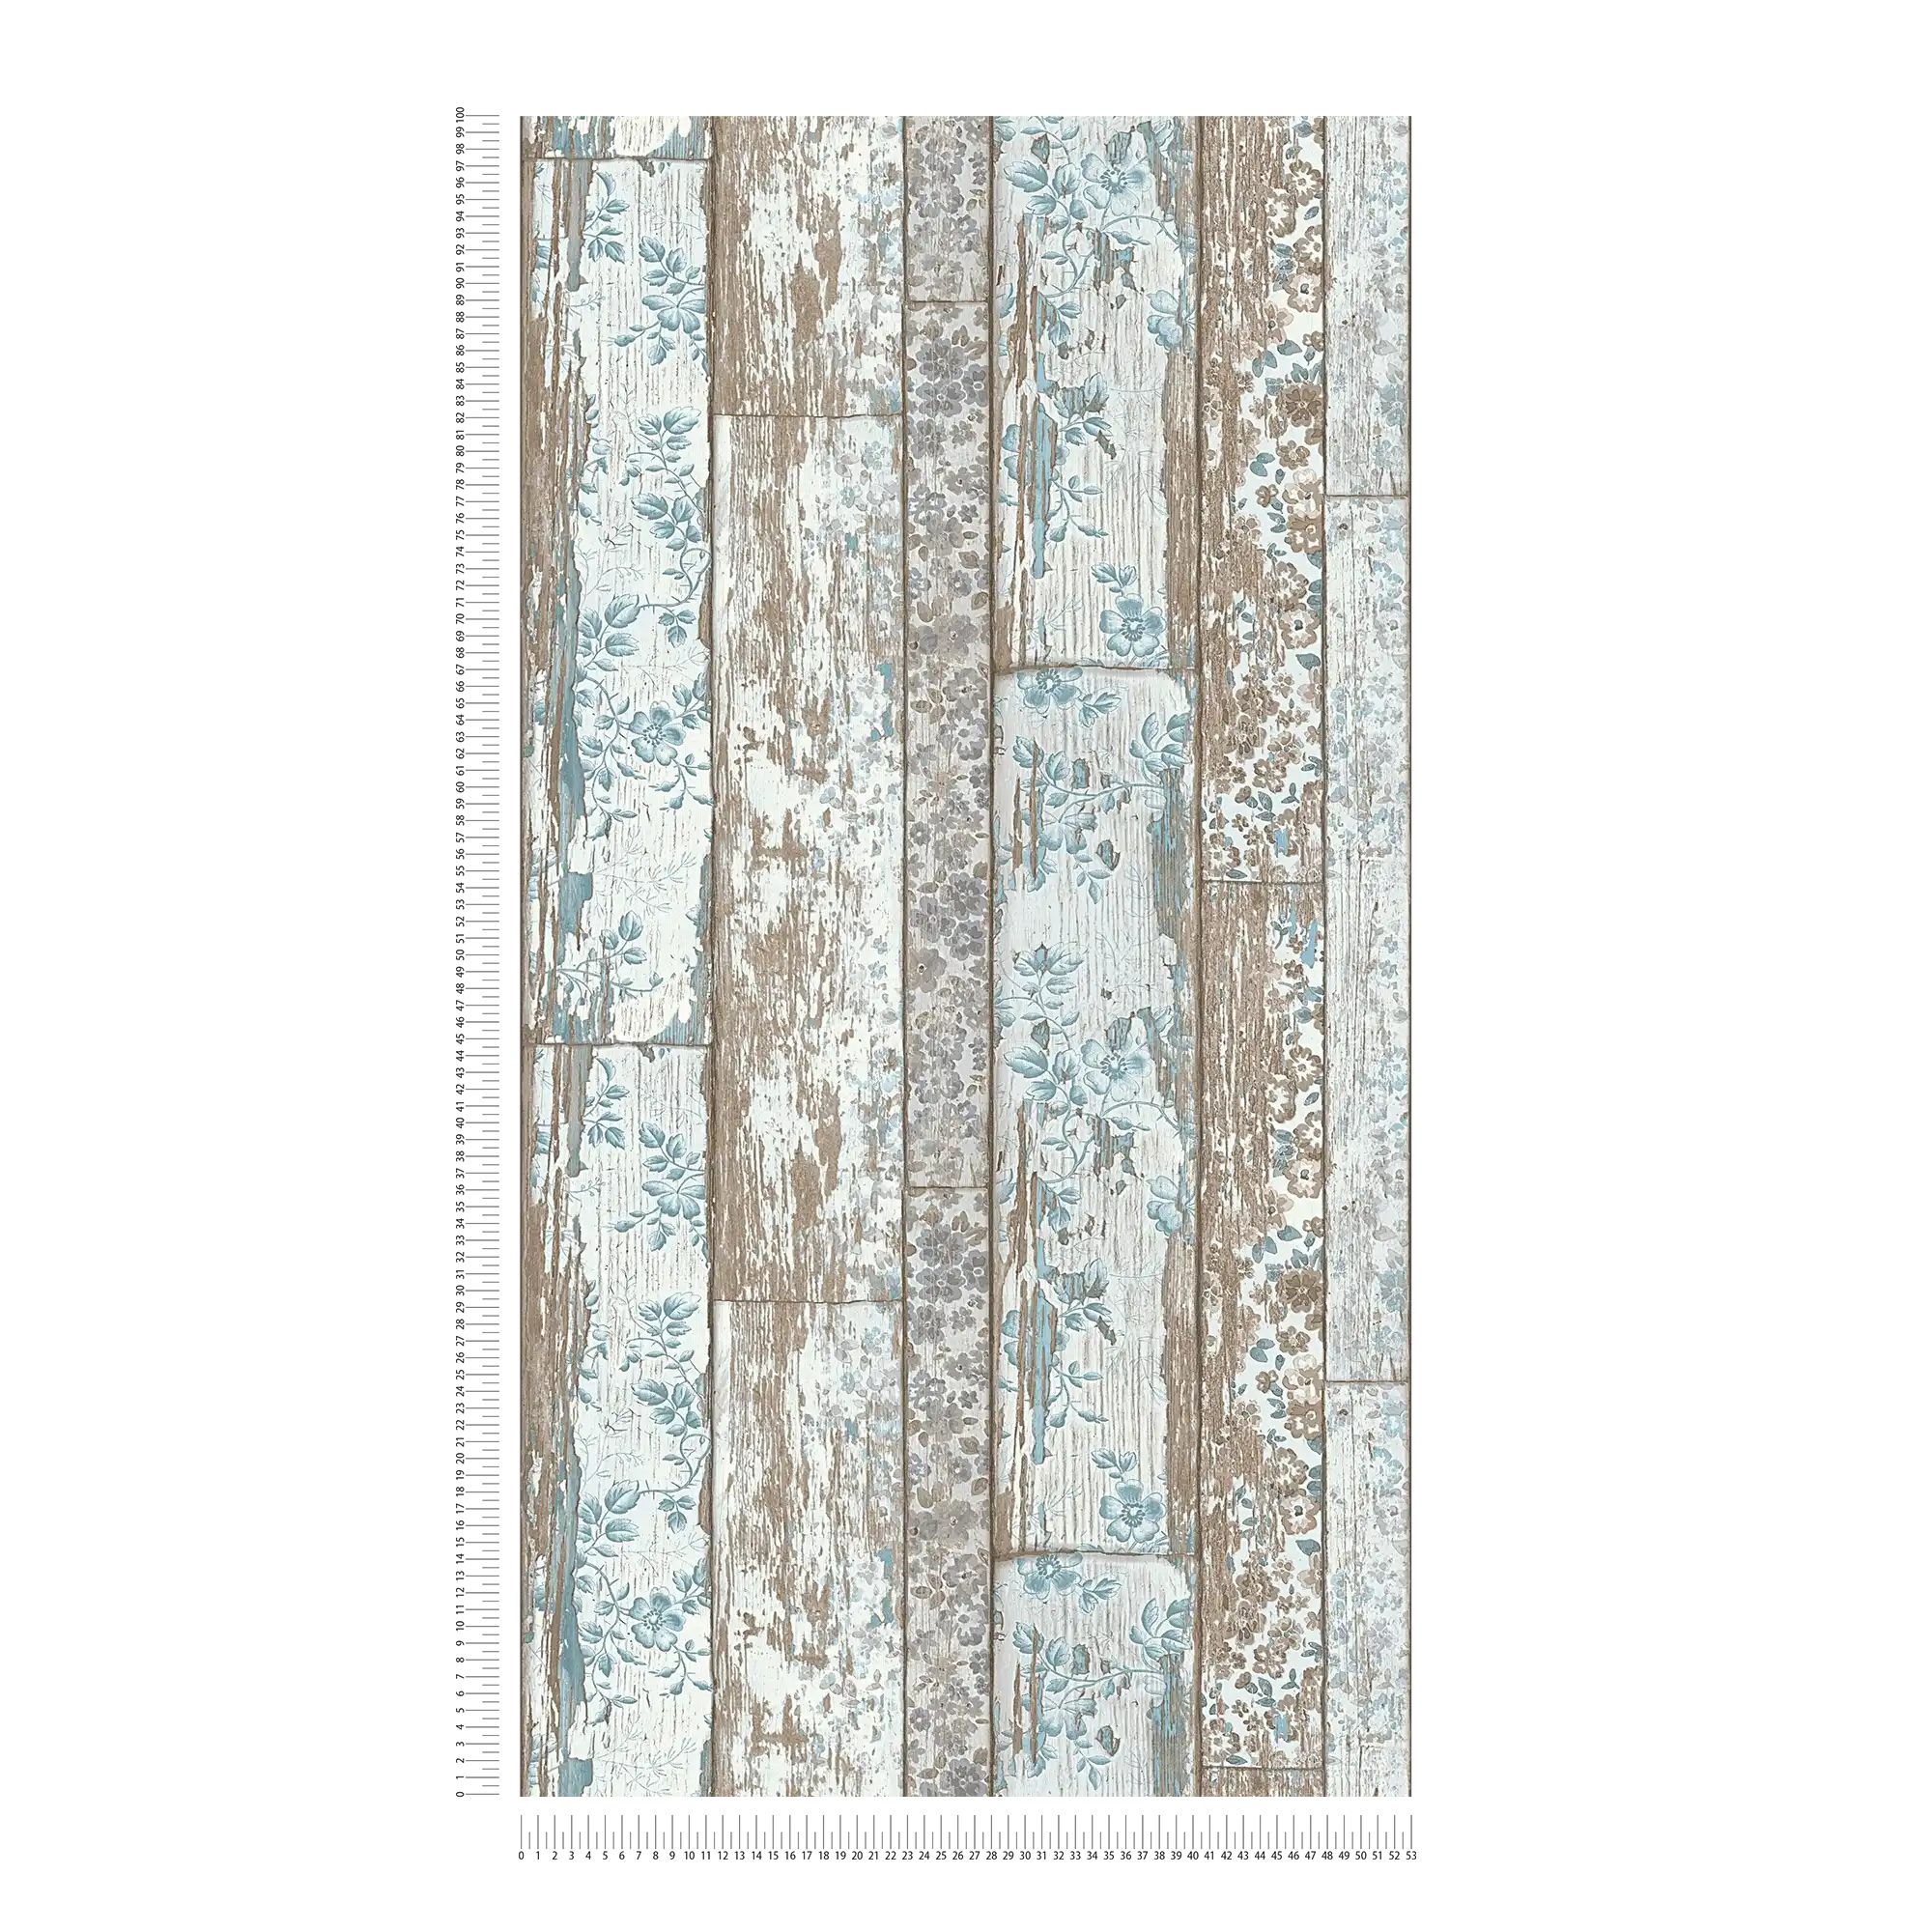             Landhuisbehang plankenlook met vintage bloemenprint - blauw, bruin, grijs
        